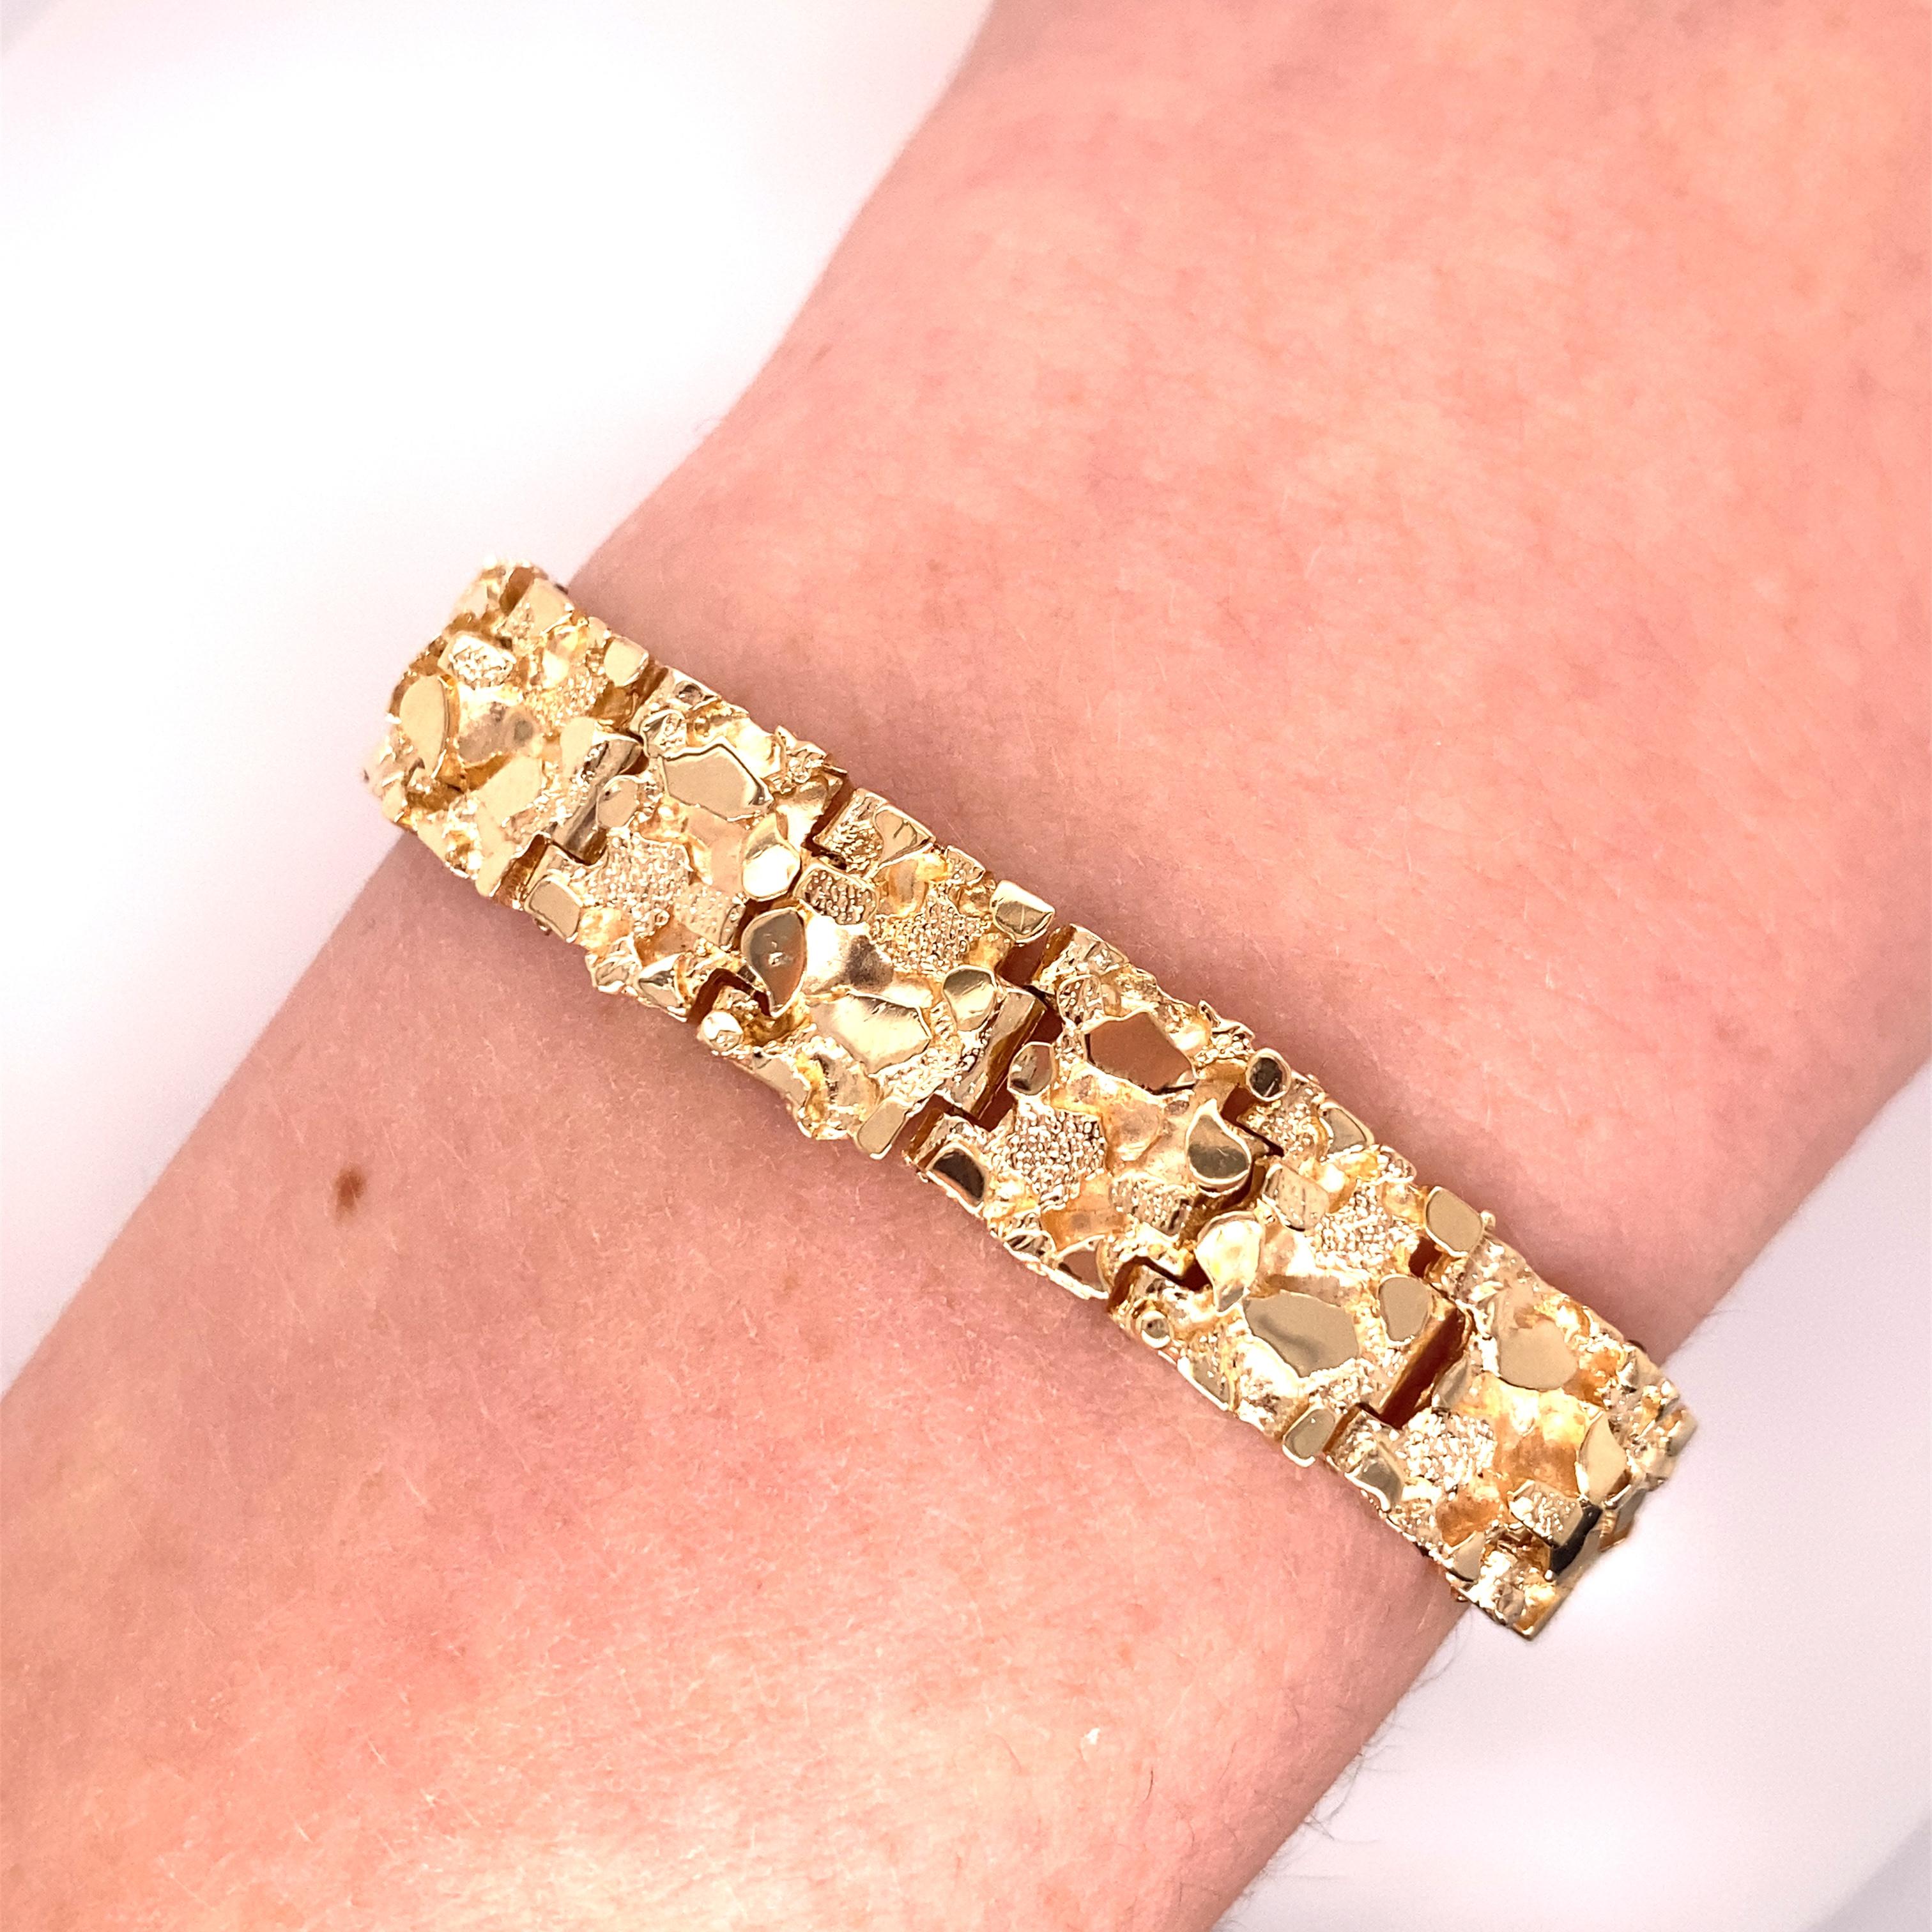 Vintage 1970's 14K Gelbgold Nugget-Armband - Das Armband misst .4 Zoll breit und 7 Zoll lang. Sie hat einen Druckknopfverschluss mit einer 8-fachen Sicherheitsverriegelung. Das Armband wiegt 32 Gramm.